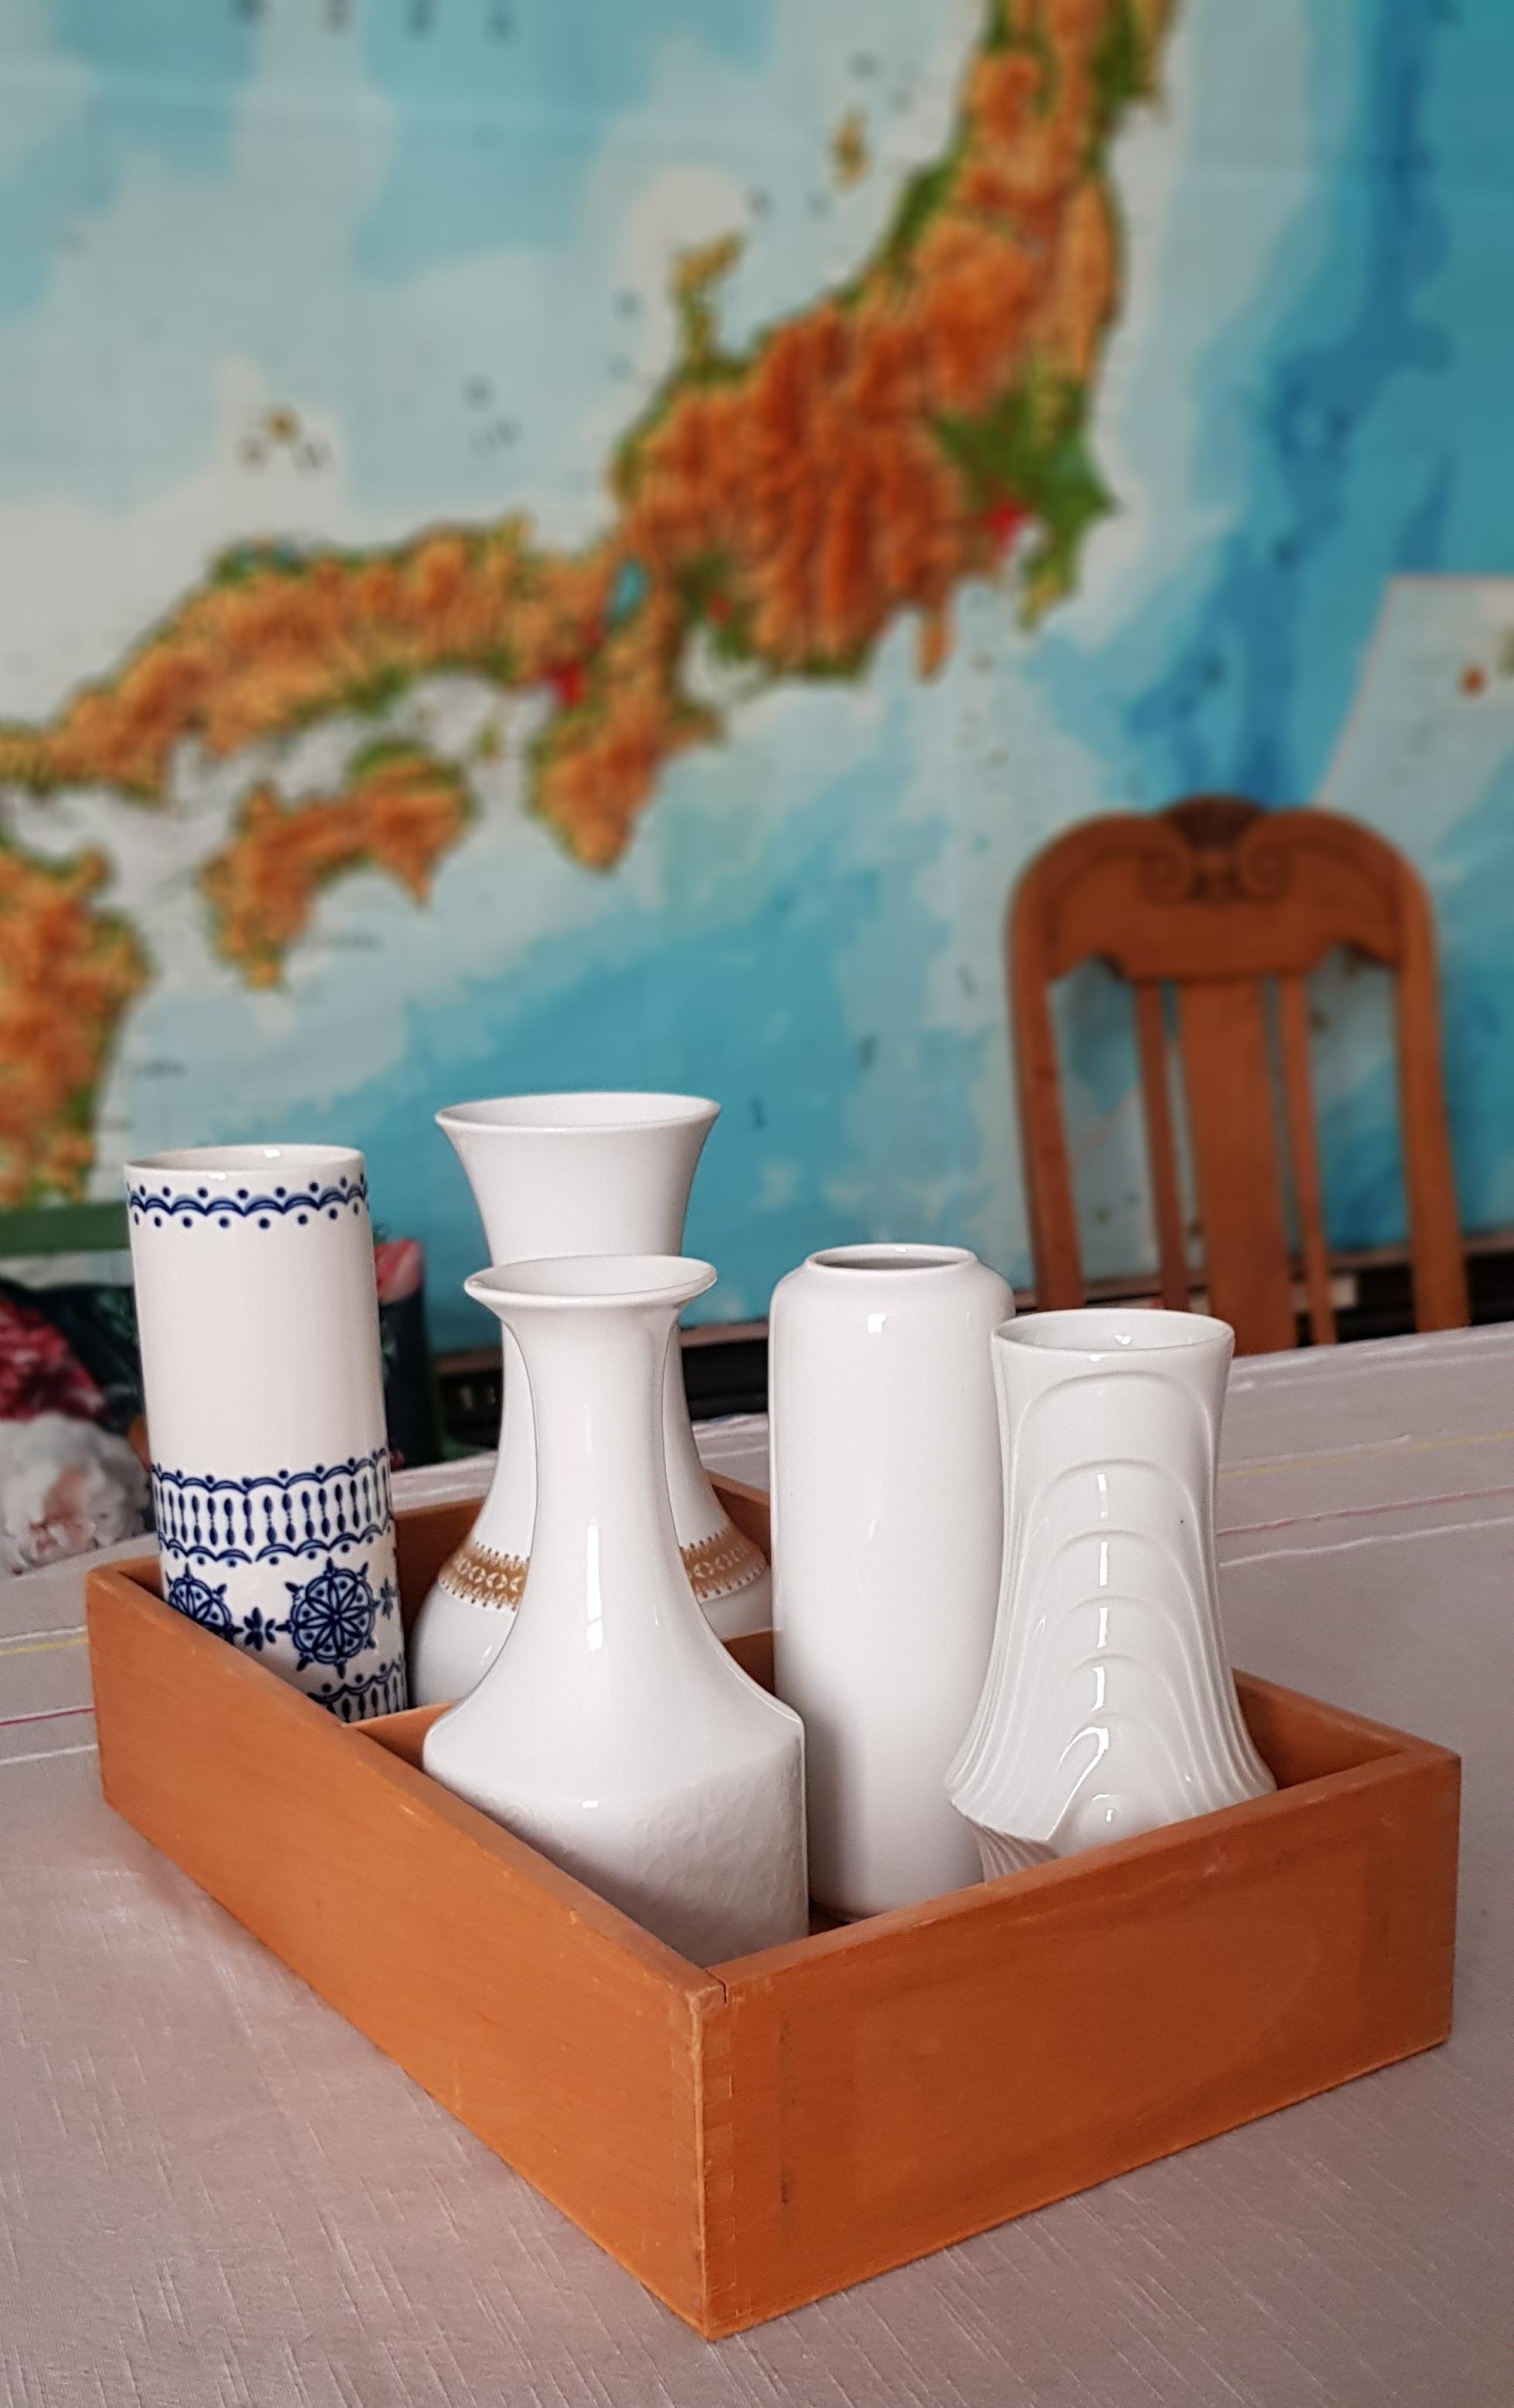 Erster Flohmarktbesuch in diesem Jahr. Schöne Vasen gefunden, Holzkasten gabs als Geschenk dazu #vasen #flohmarktfund